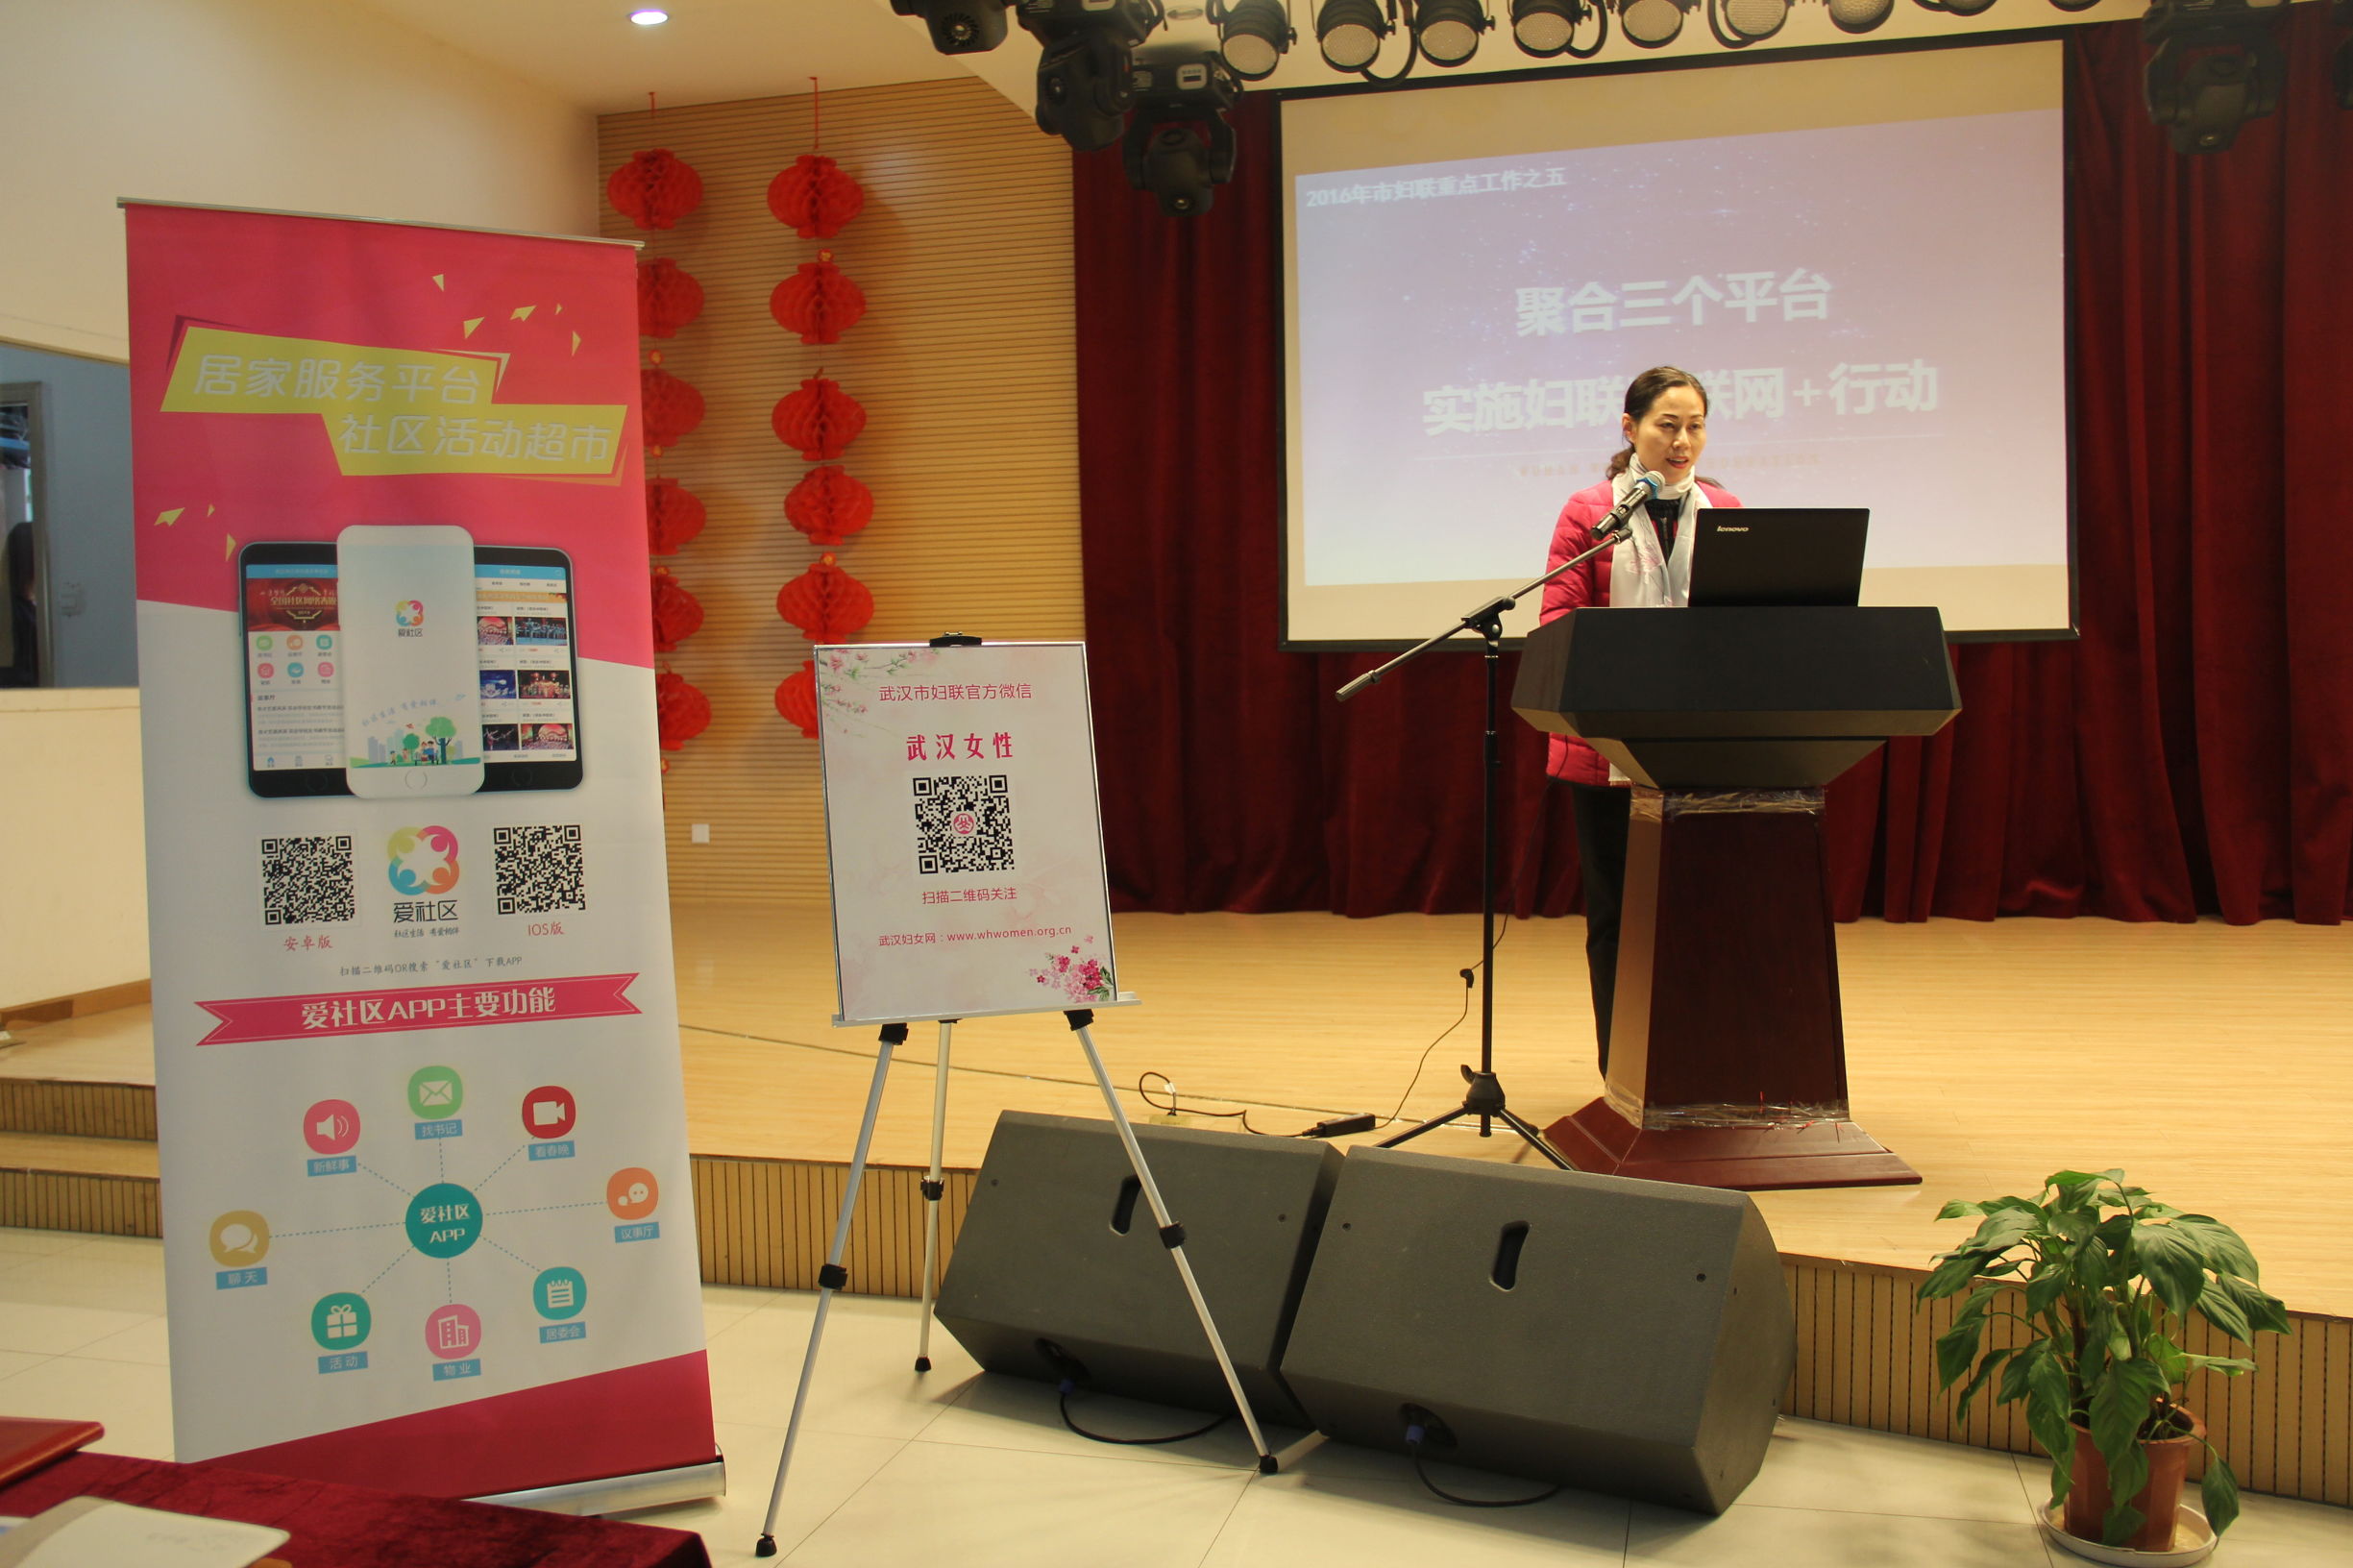 武汉妇联联合掌上APP 打造立体化“互联网+妇女工作”新模式